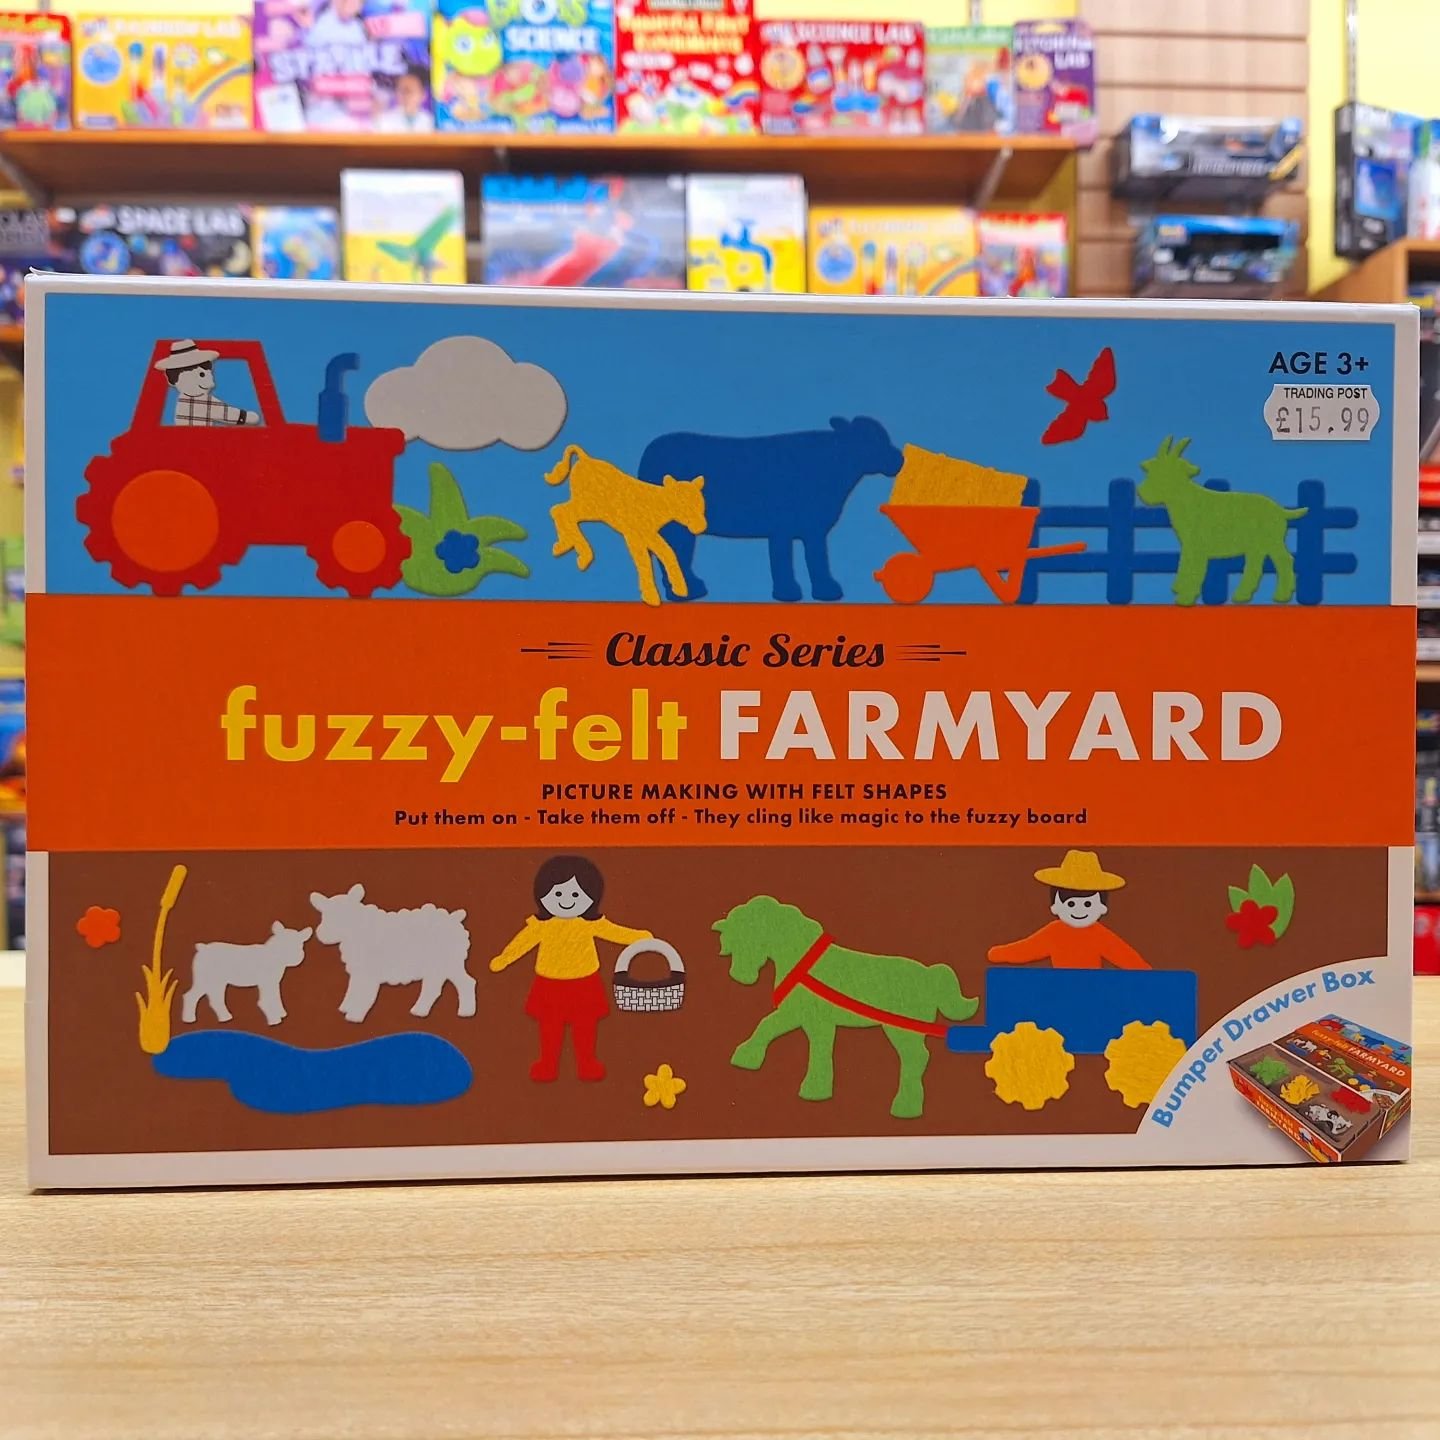 🐄NEW IN🚜

Fuzzy Felt Farmyard, the 70 year old classic.

#fuzzyfelts #fuzzyfelt #vintagetoys #classictoys #toyshop #kingsbridge #salcombe #devon
#lovekingsbridge #shopkingsbridge